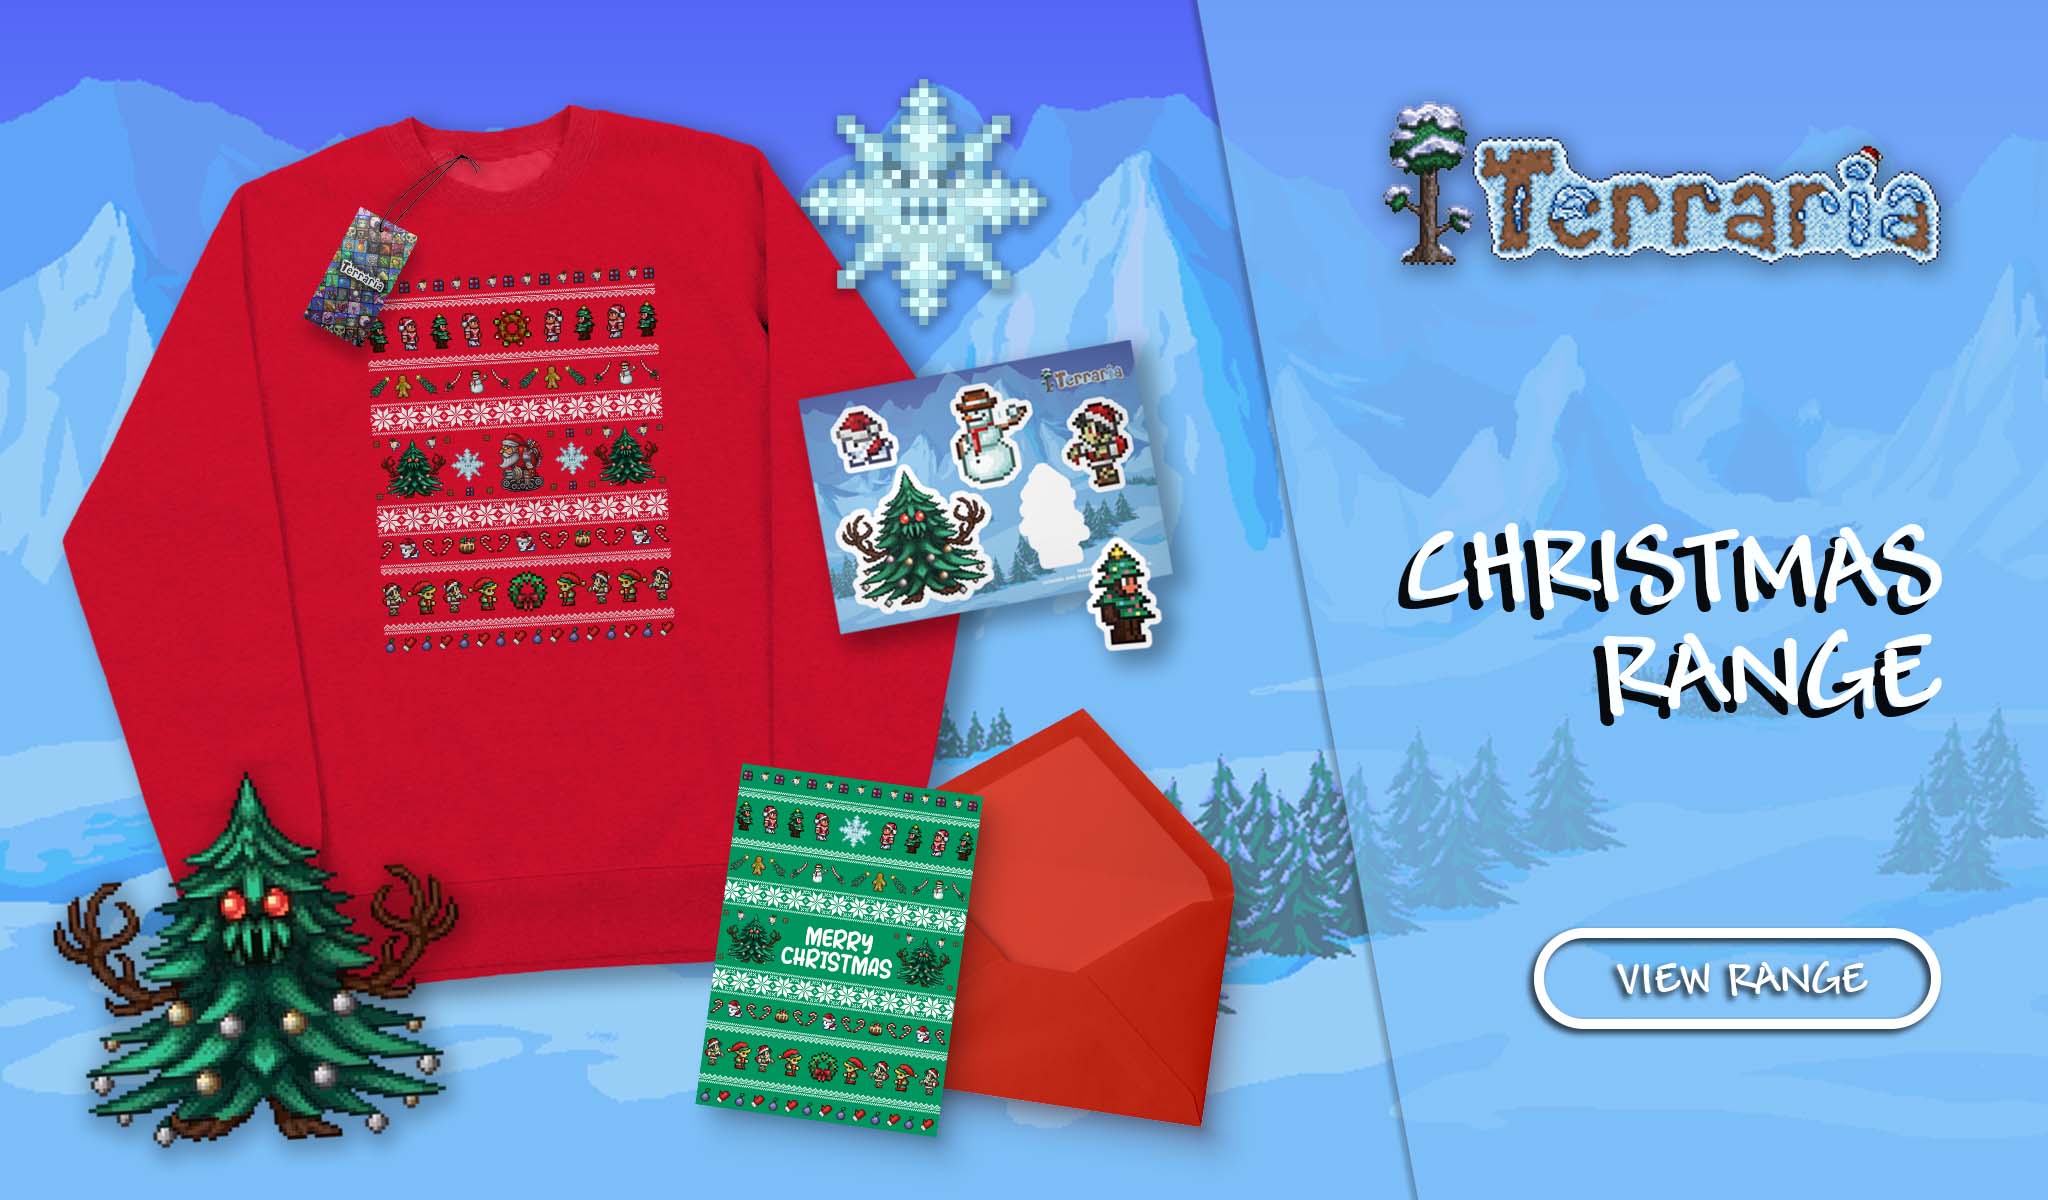 Terraria-Christmas-1024-2x.jpg